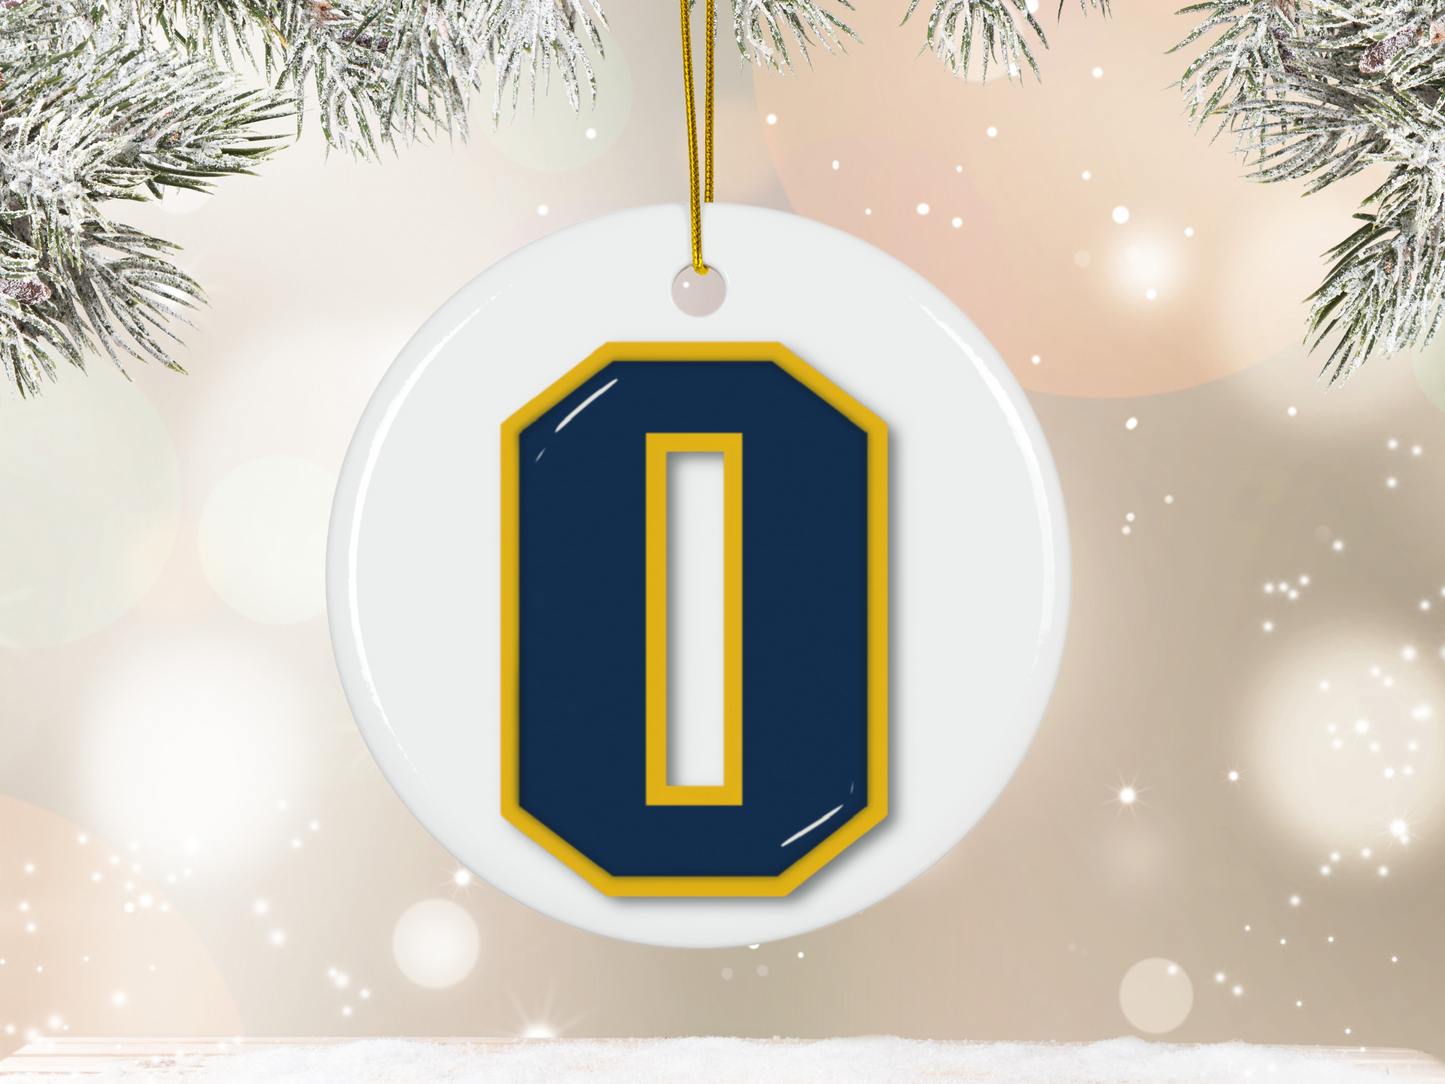 Oxford "O" Ornament